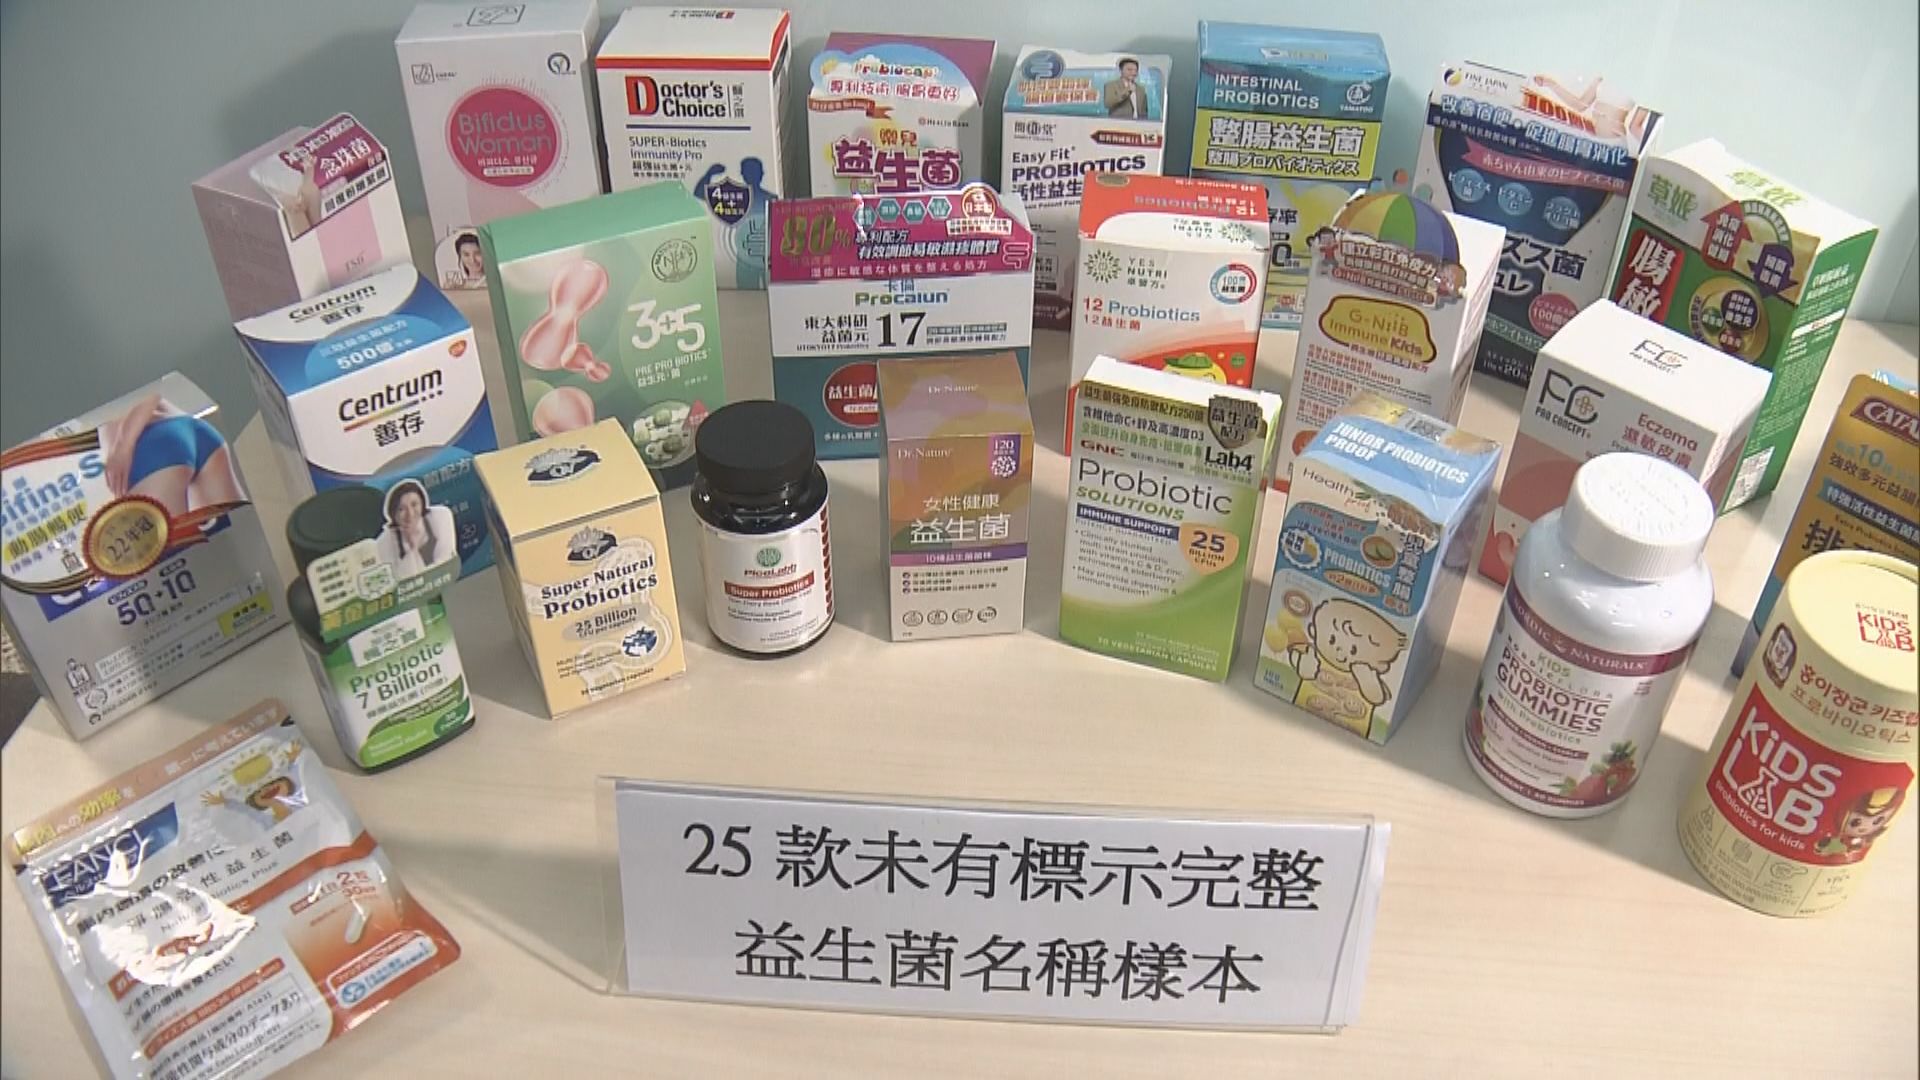 一款日本益生菌產品聲稱適合兒童食用 消委會揭含世衛不建議人類使用菌株